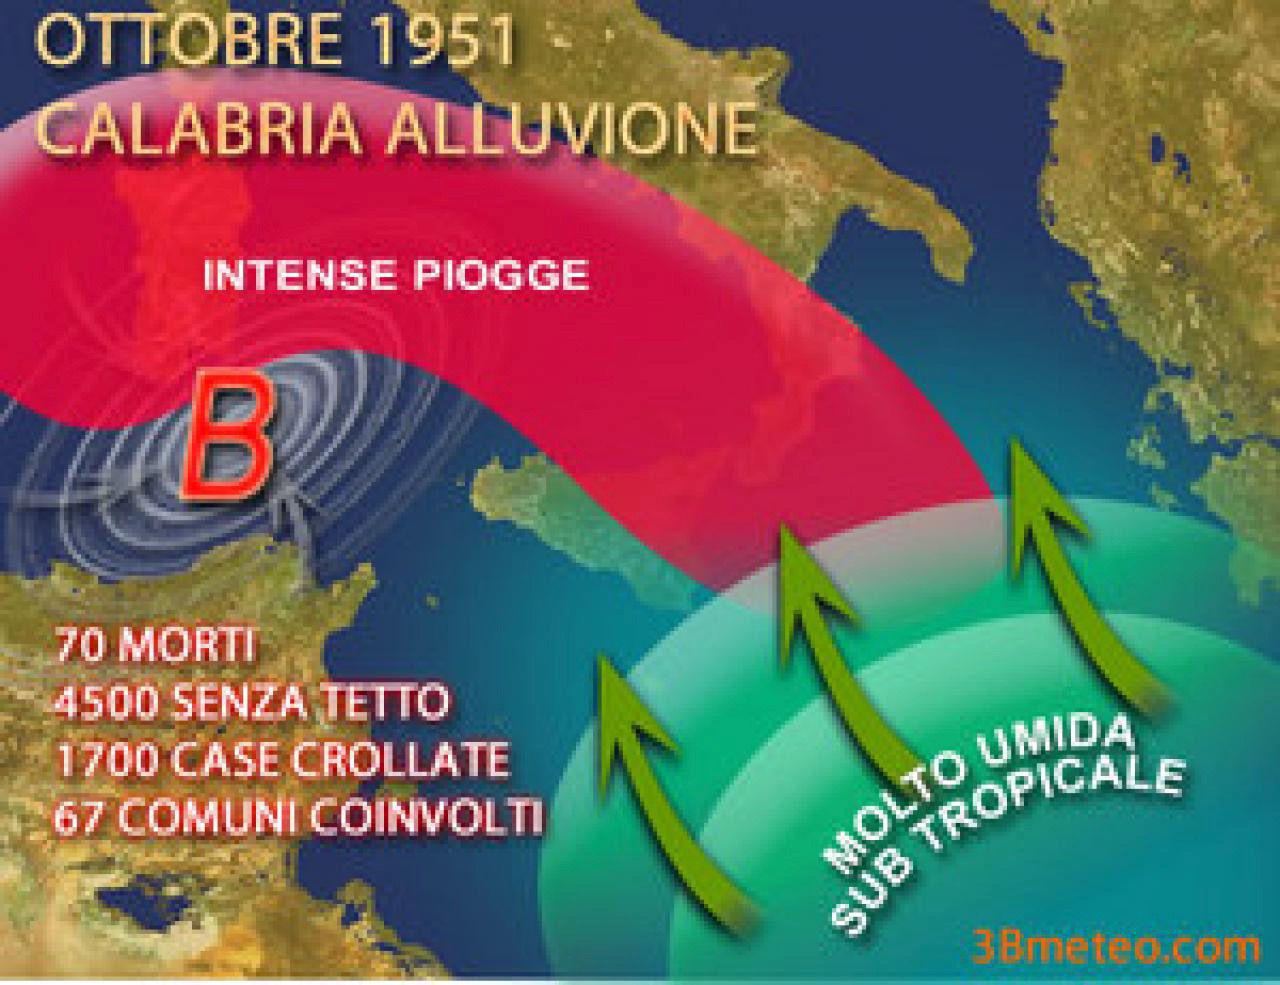 Calabria_alluvione_1951-alluvione_in_Calabria_-_ottobre_1951.jpeg